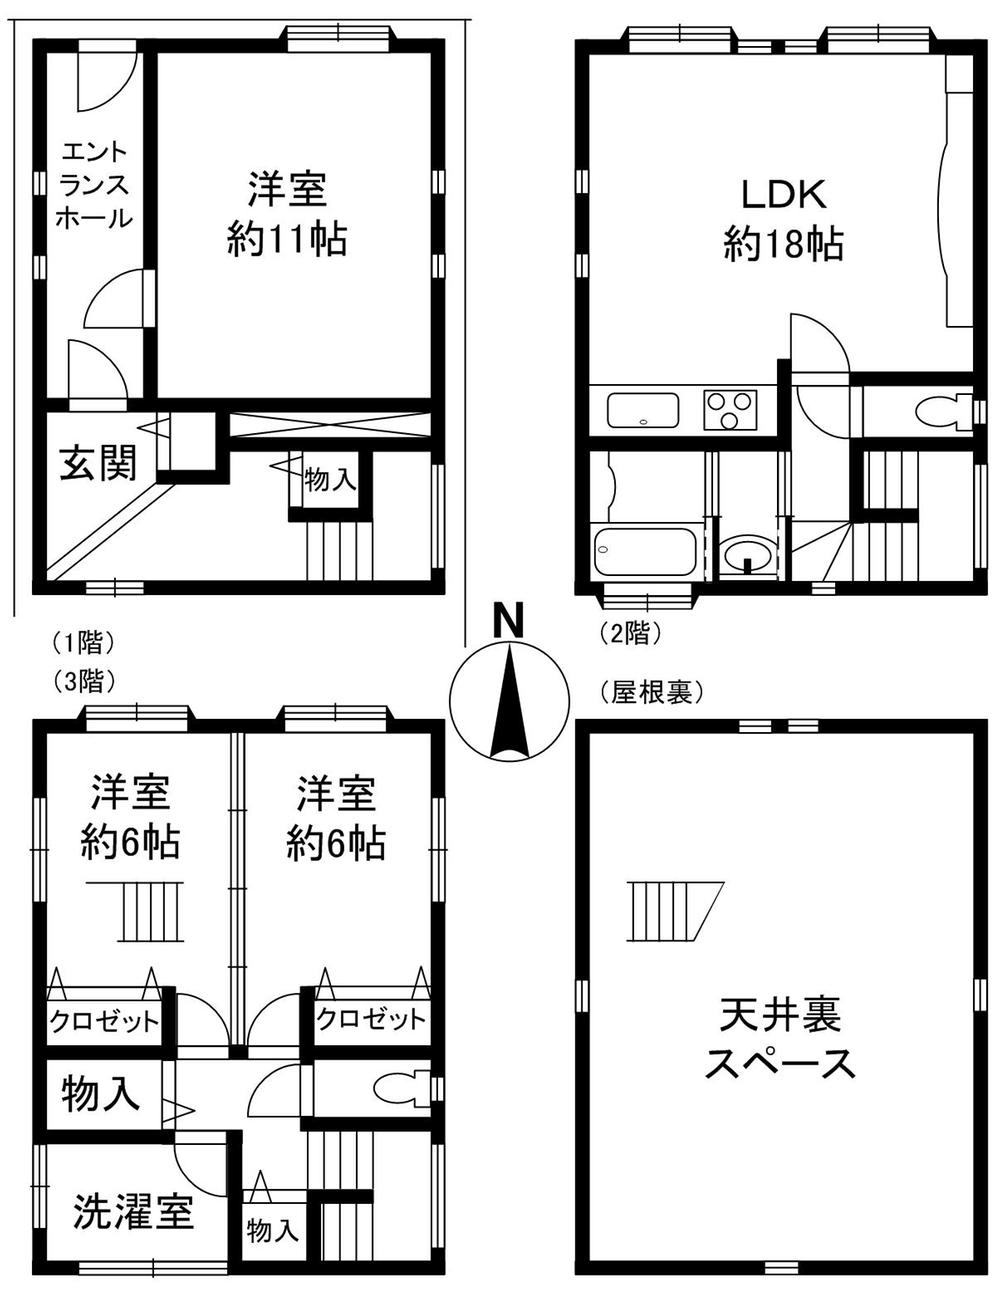 Floor plan. 19,980,000 yen, 3LDK + S (storeroom), Land area 49.05 sq m , Building area 122.97 sq m